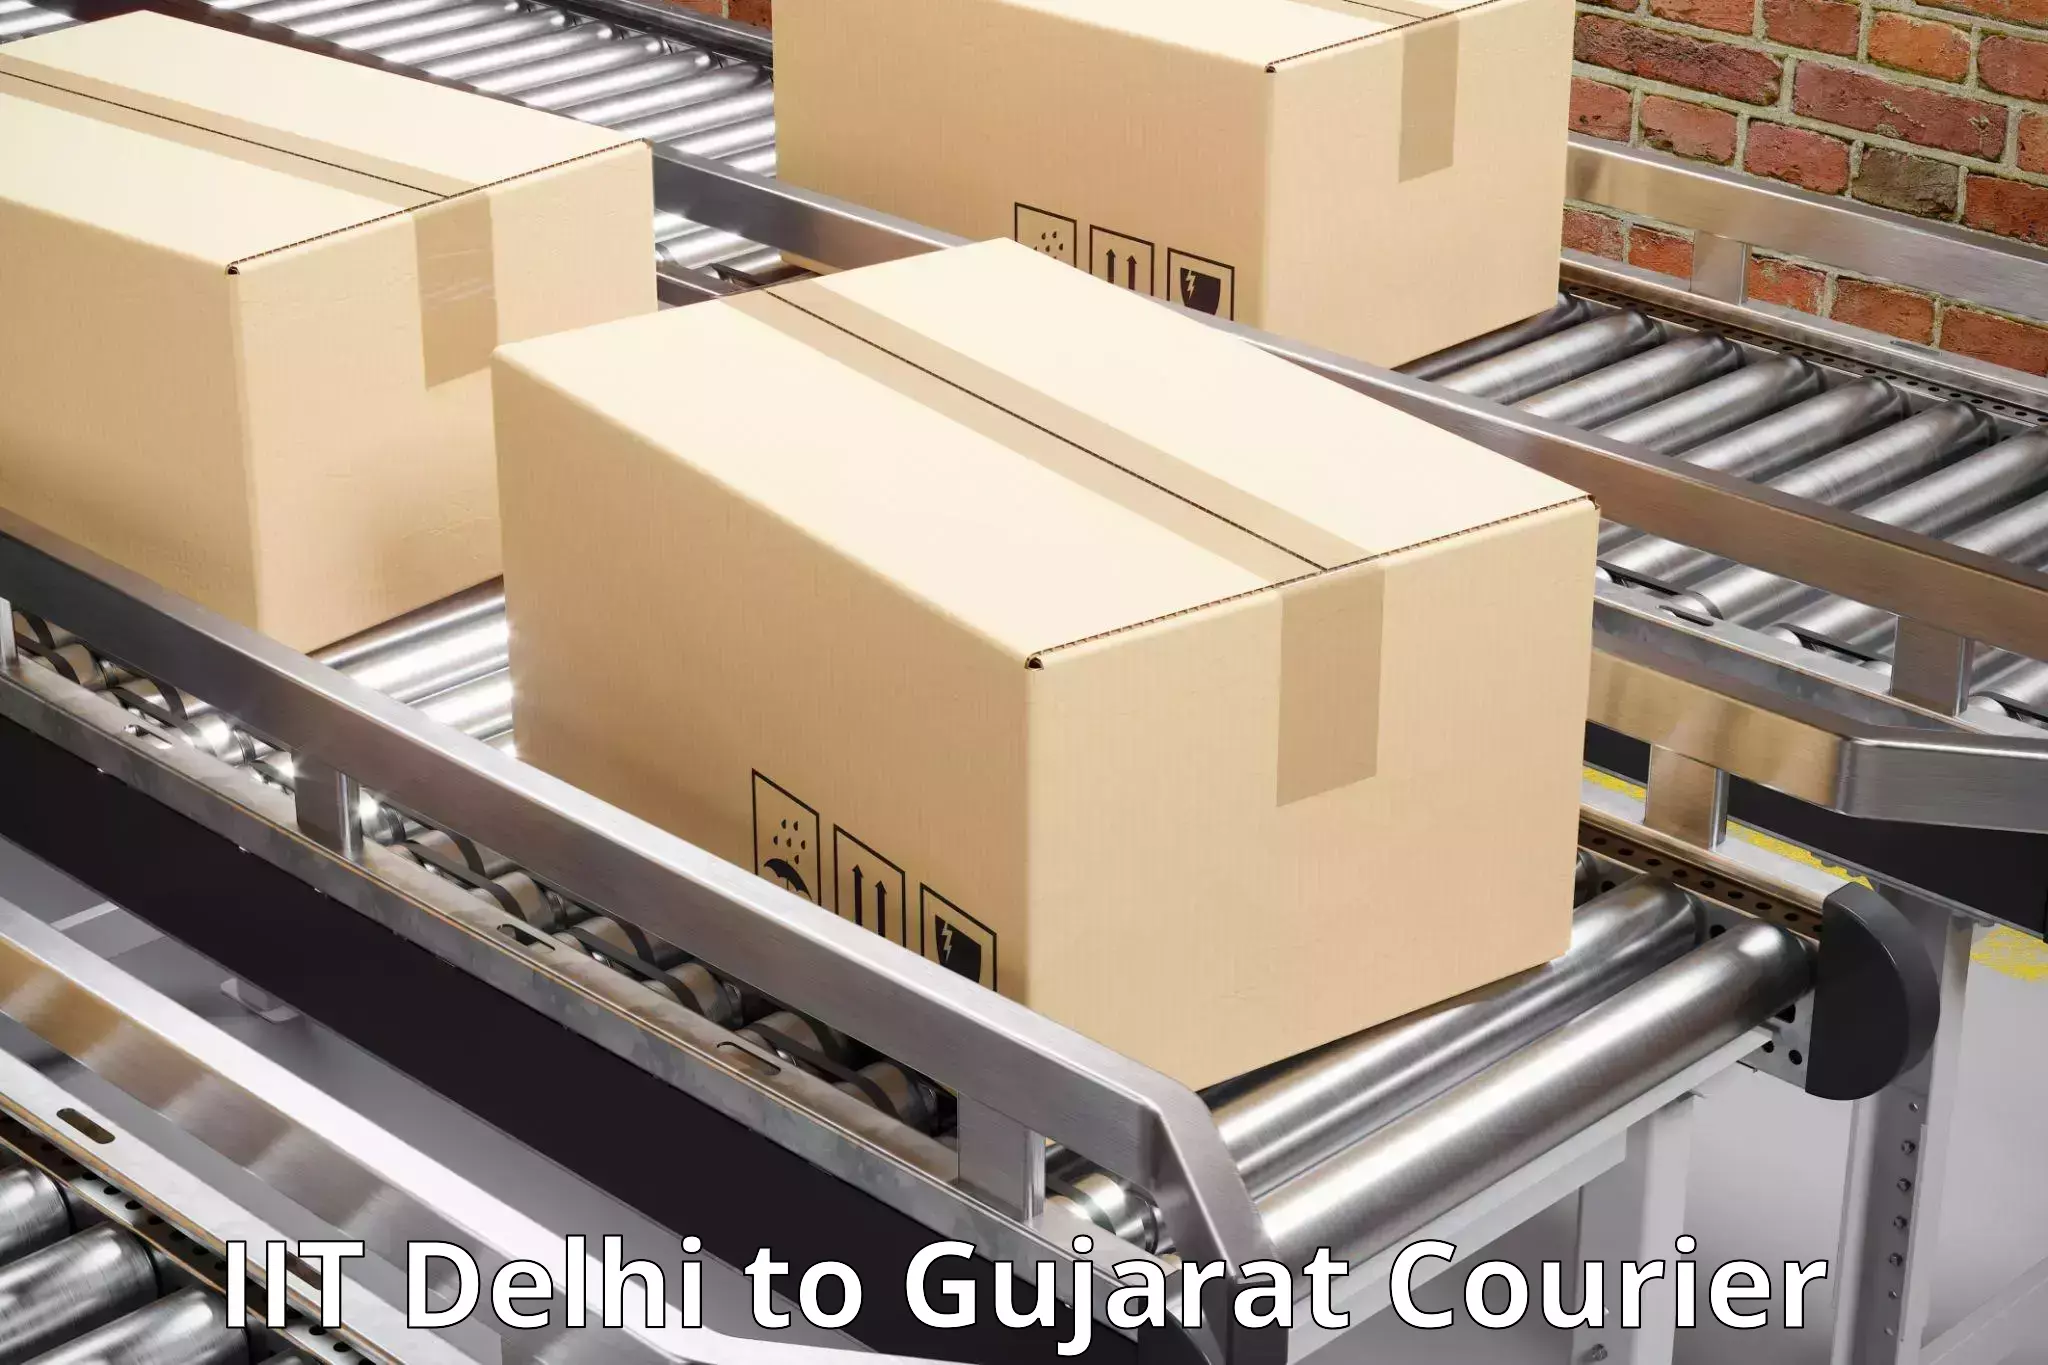 E-commerce fulfillment IIT Delhi to Gujarat